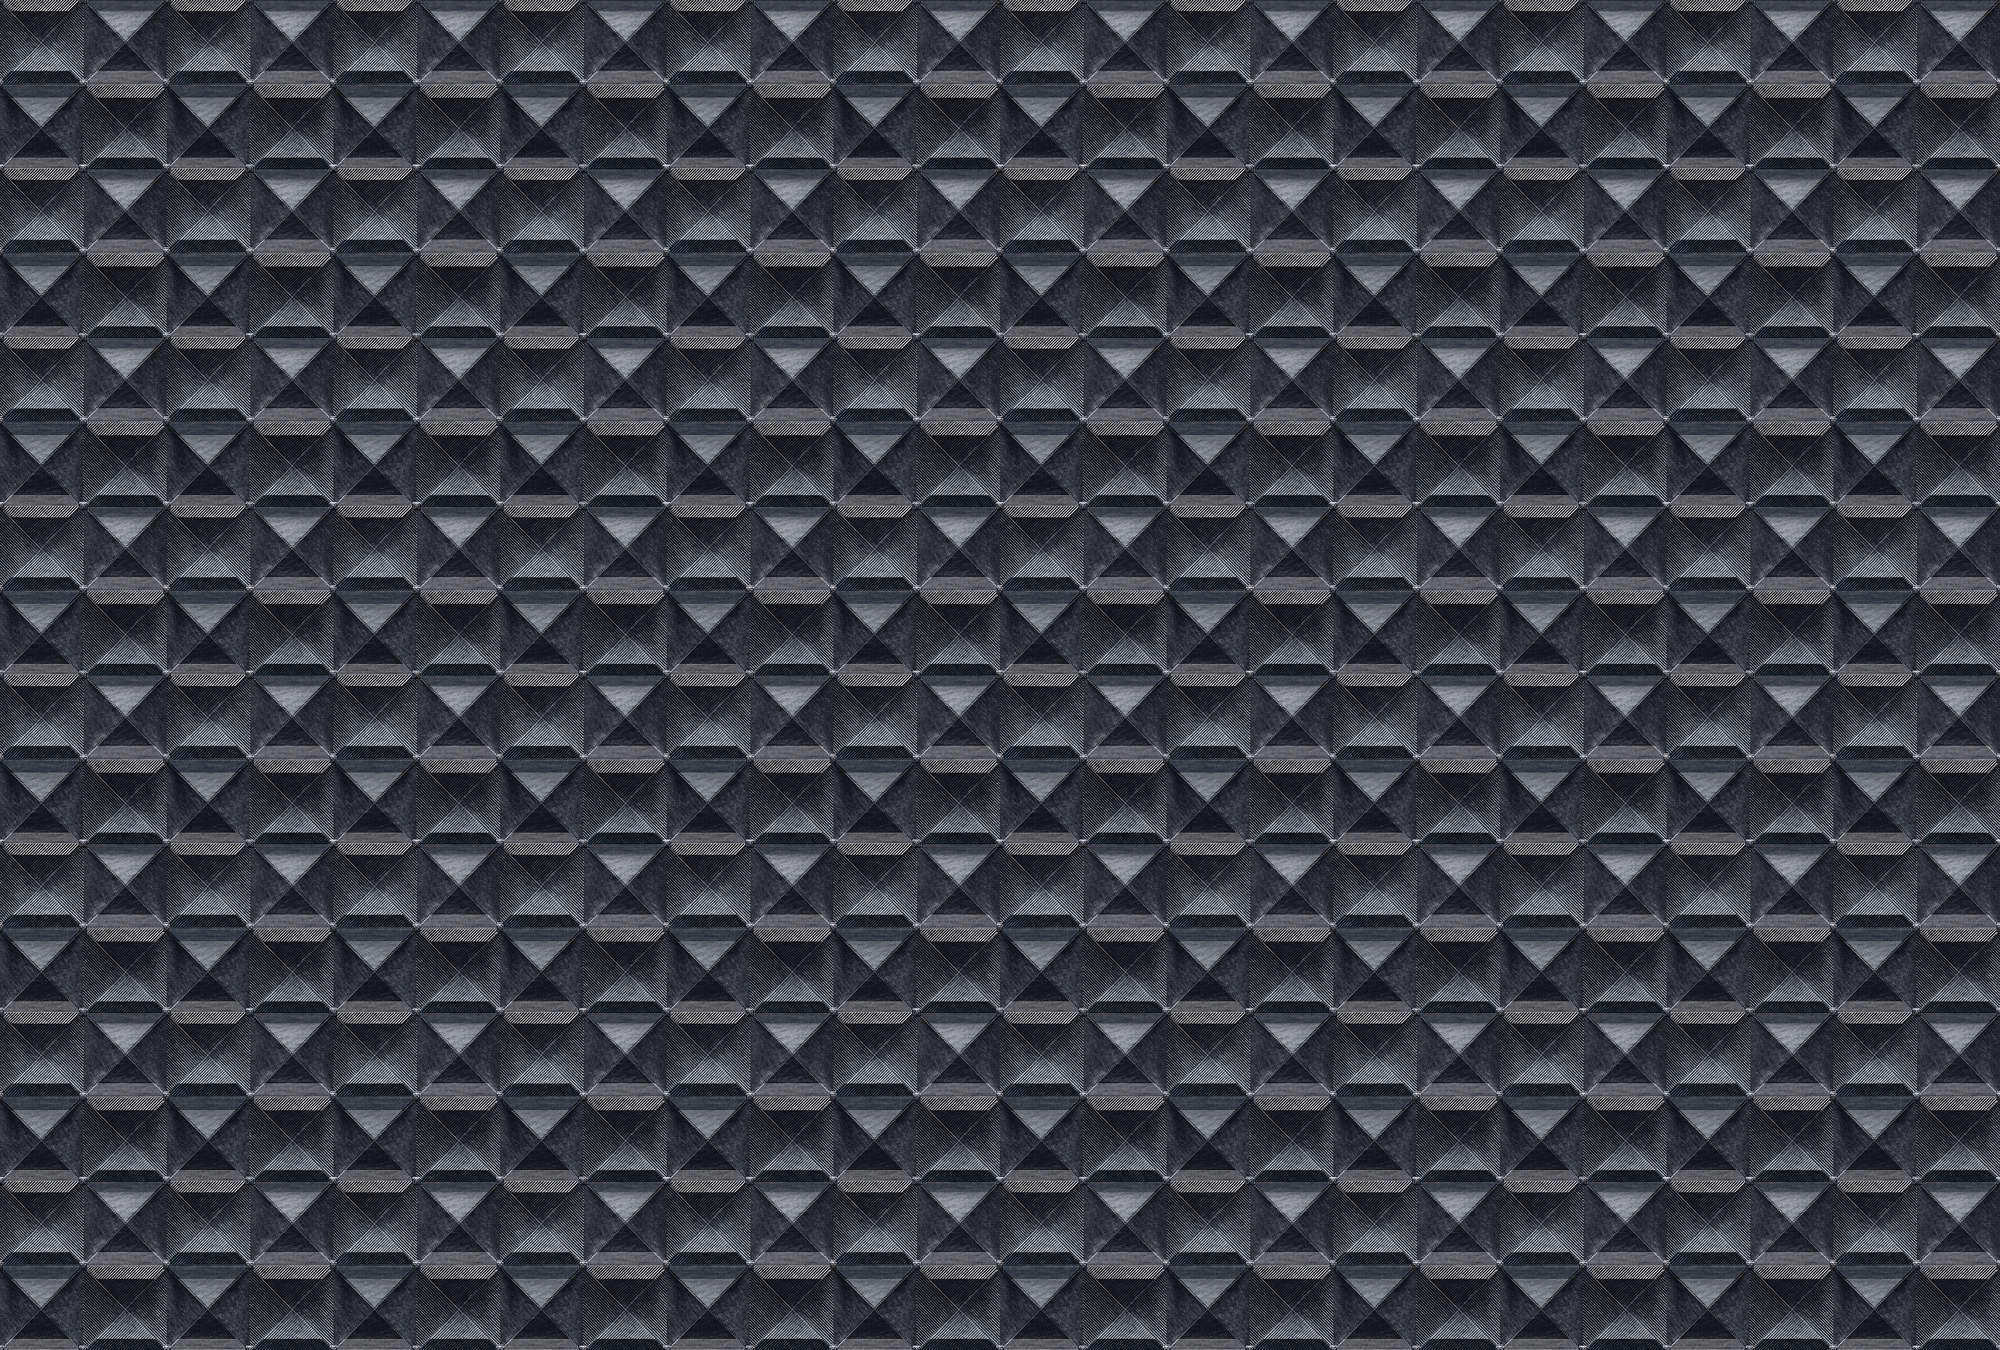             The edge 2 - 3D behang met ruitjesmotief van metaal - blauw, zwart | parelmoer glad vlies
        